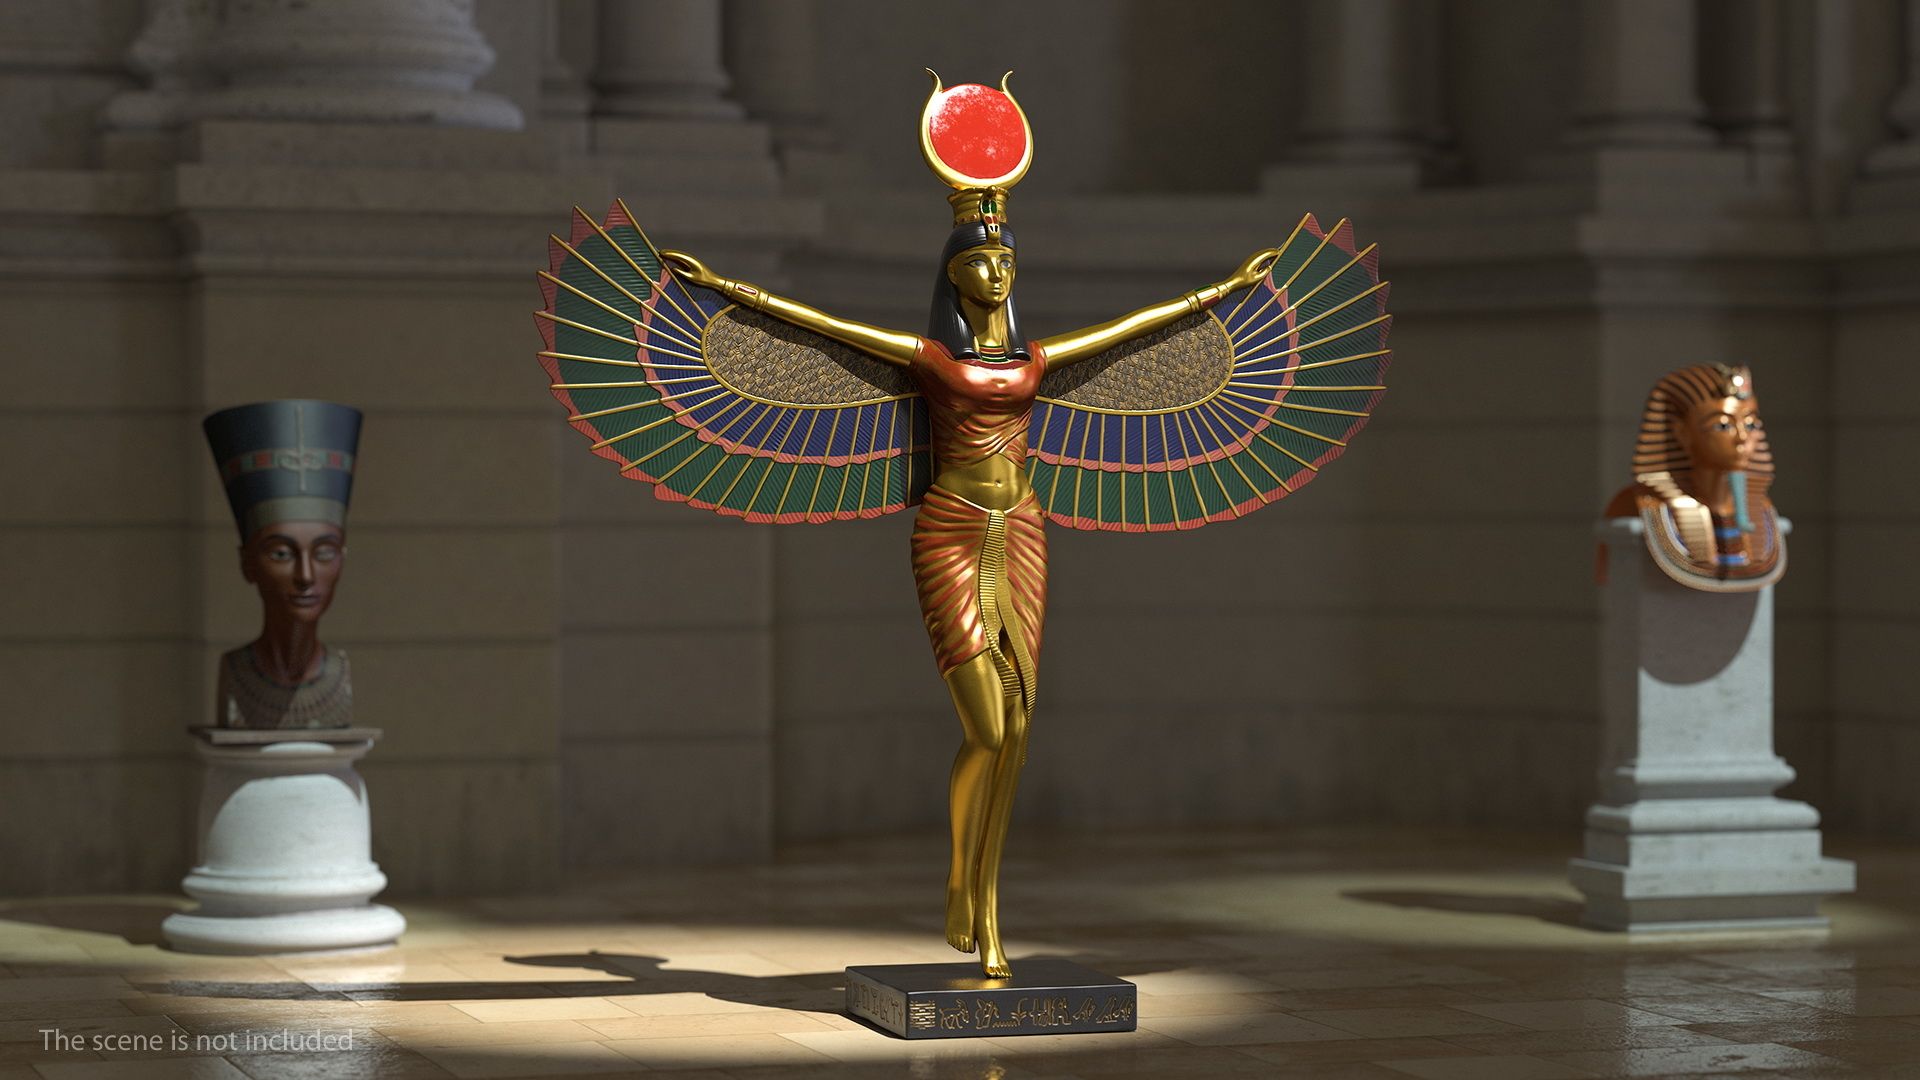 исида богиня древнего египта фото